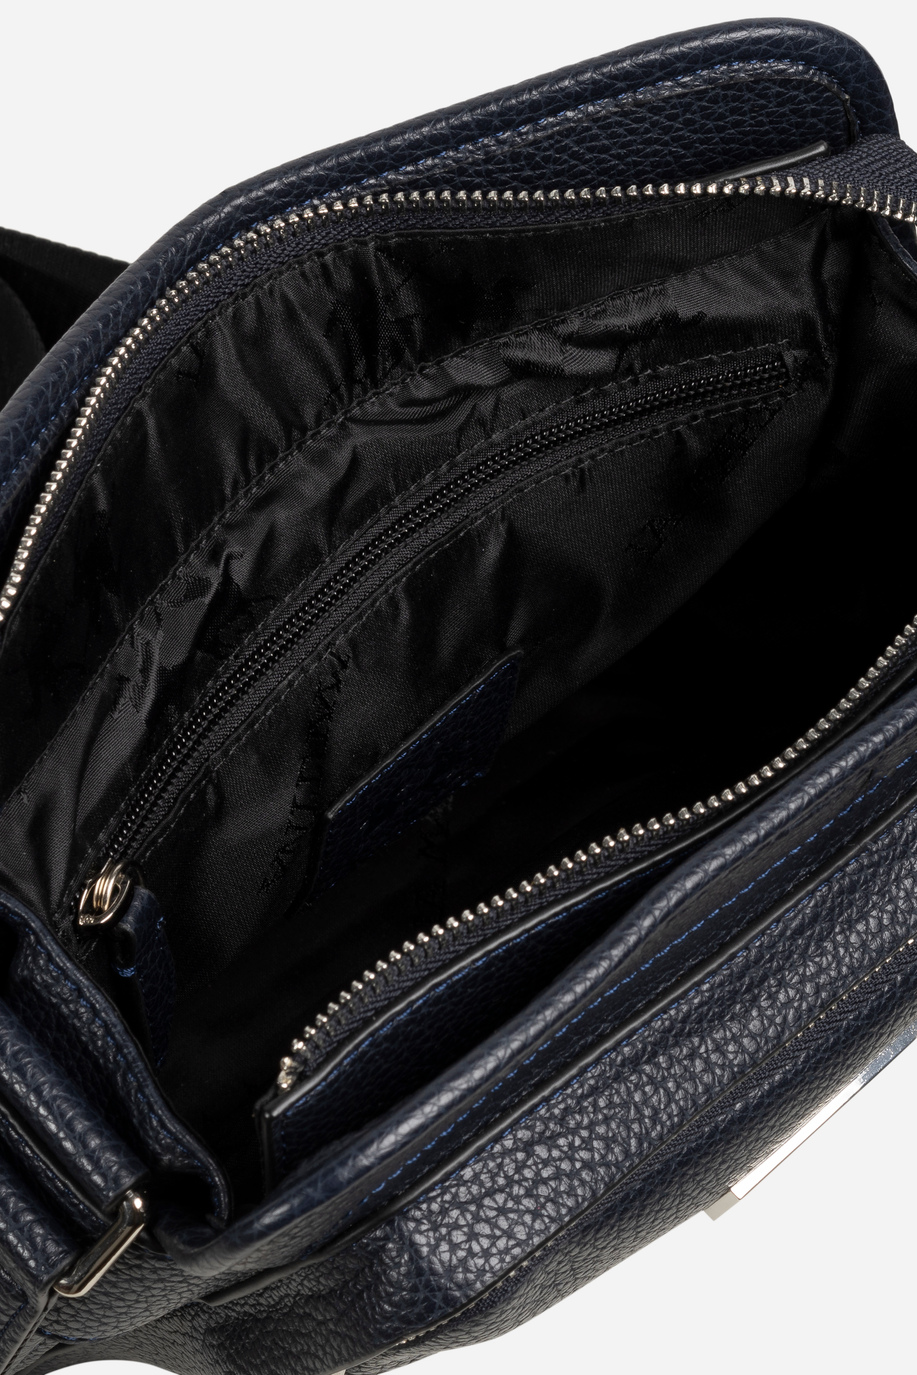 Bodybag Uomo In Pu - Borse | La Martina - Official Online Shop